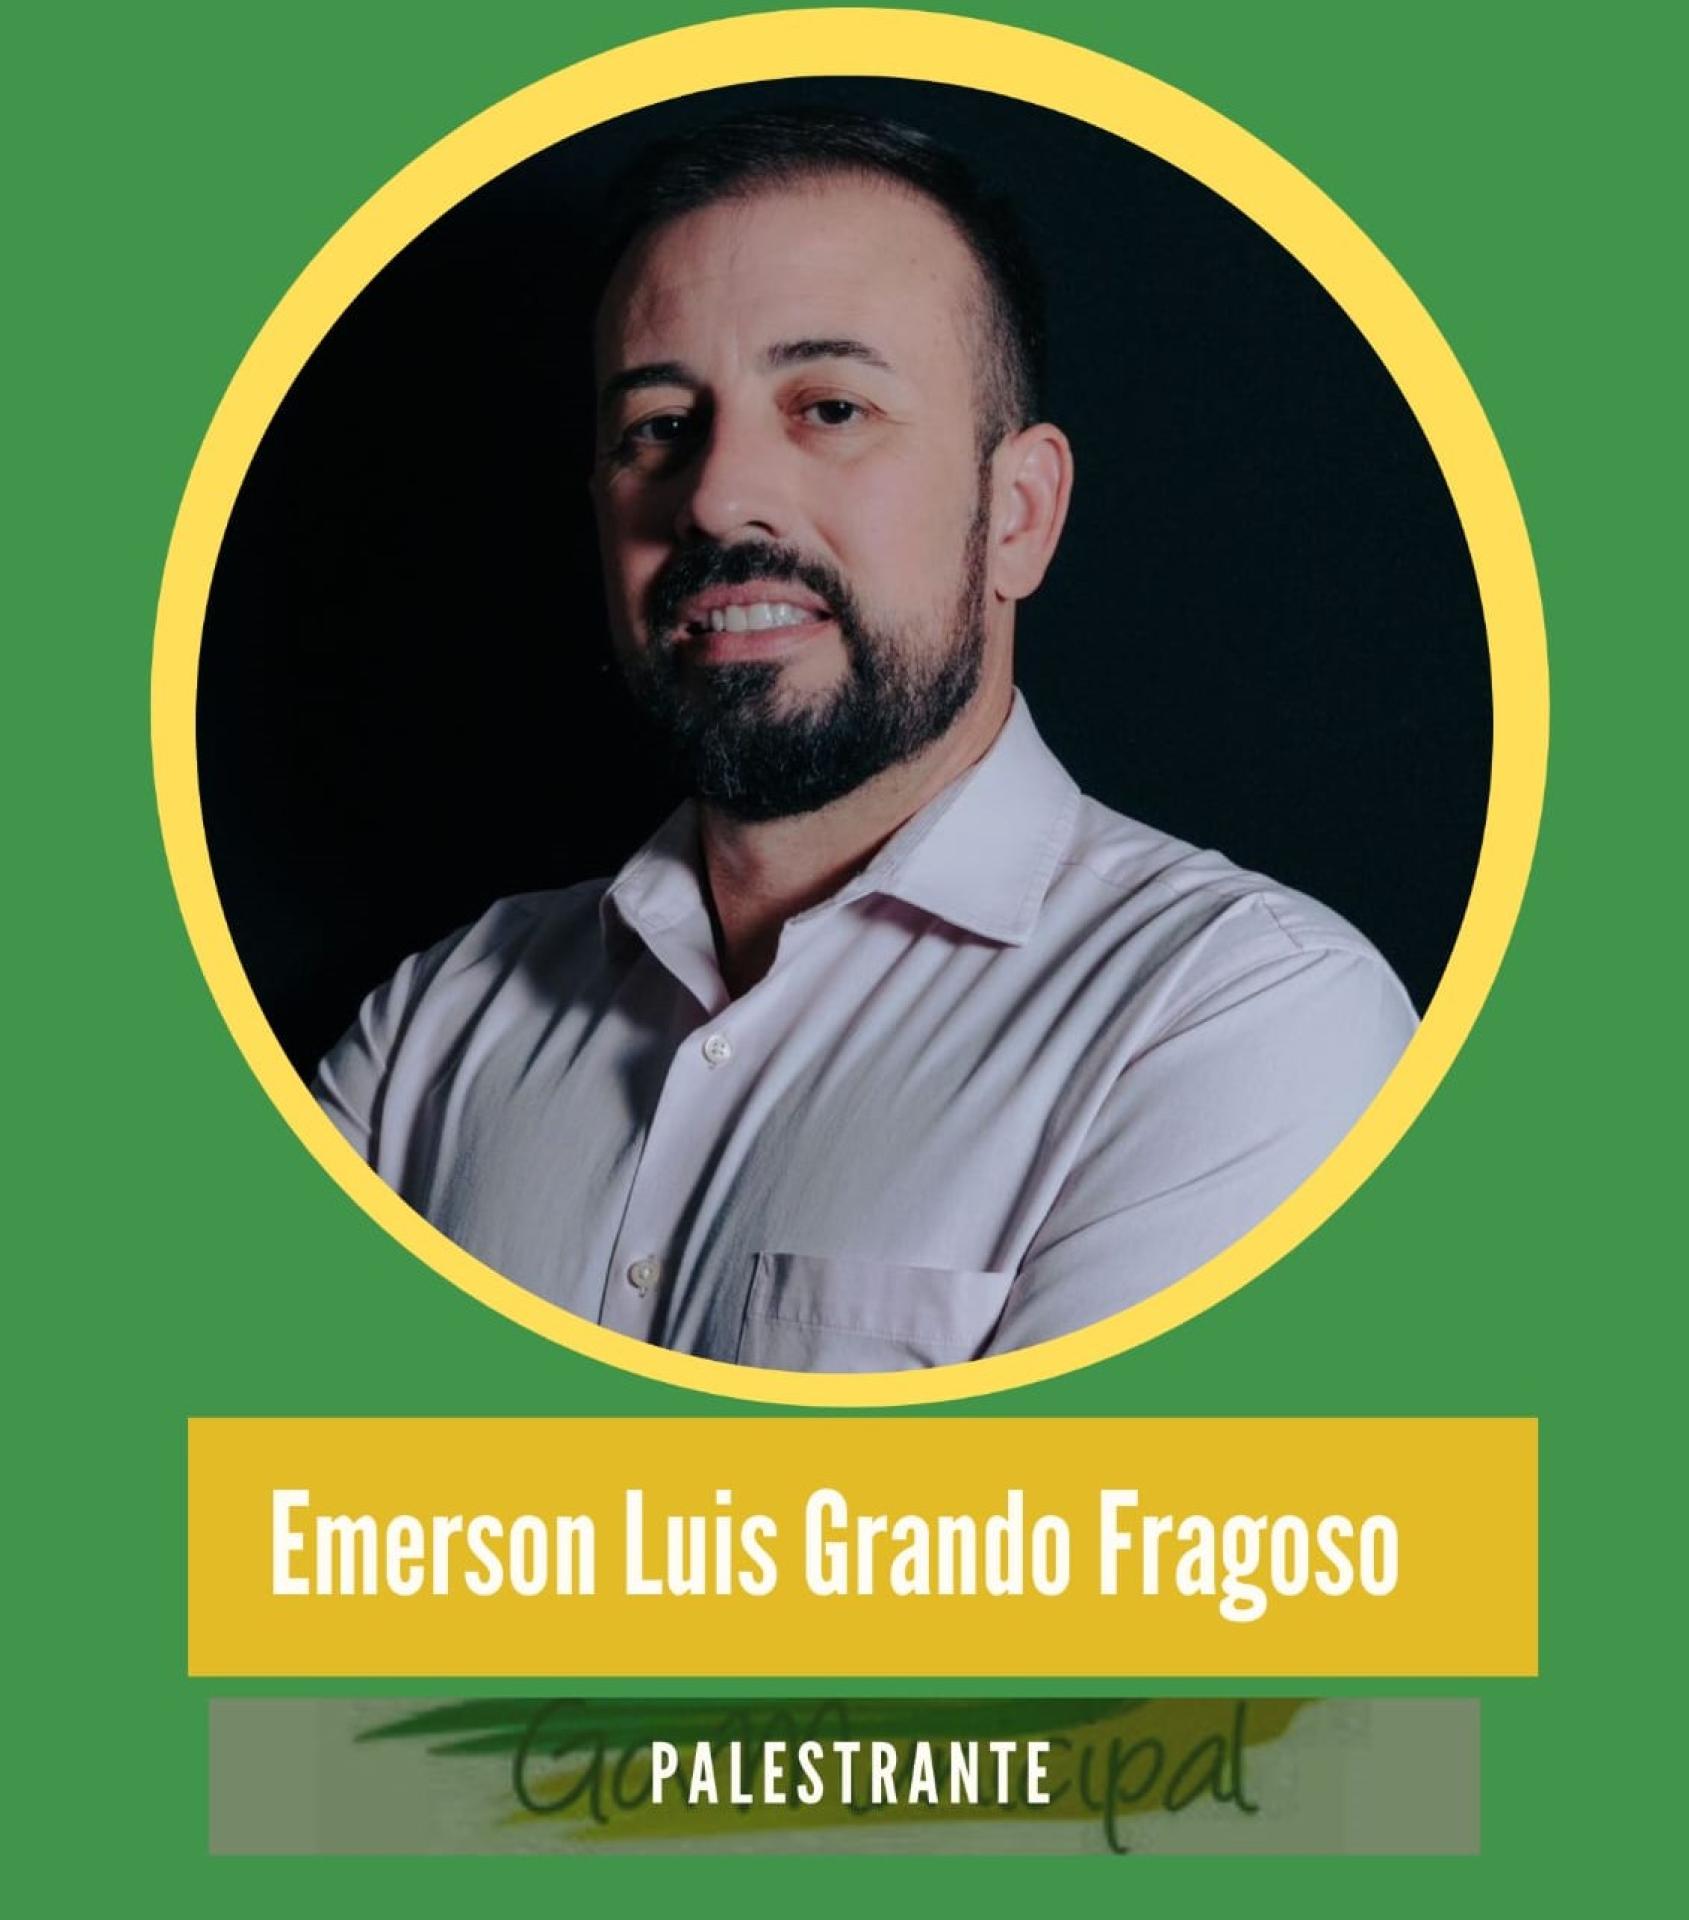 EMERSON LUIS GRANDO FRAGOSO